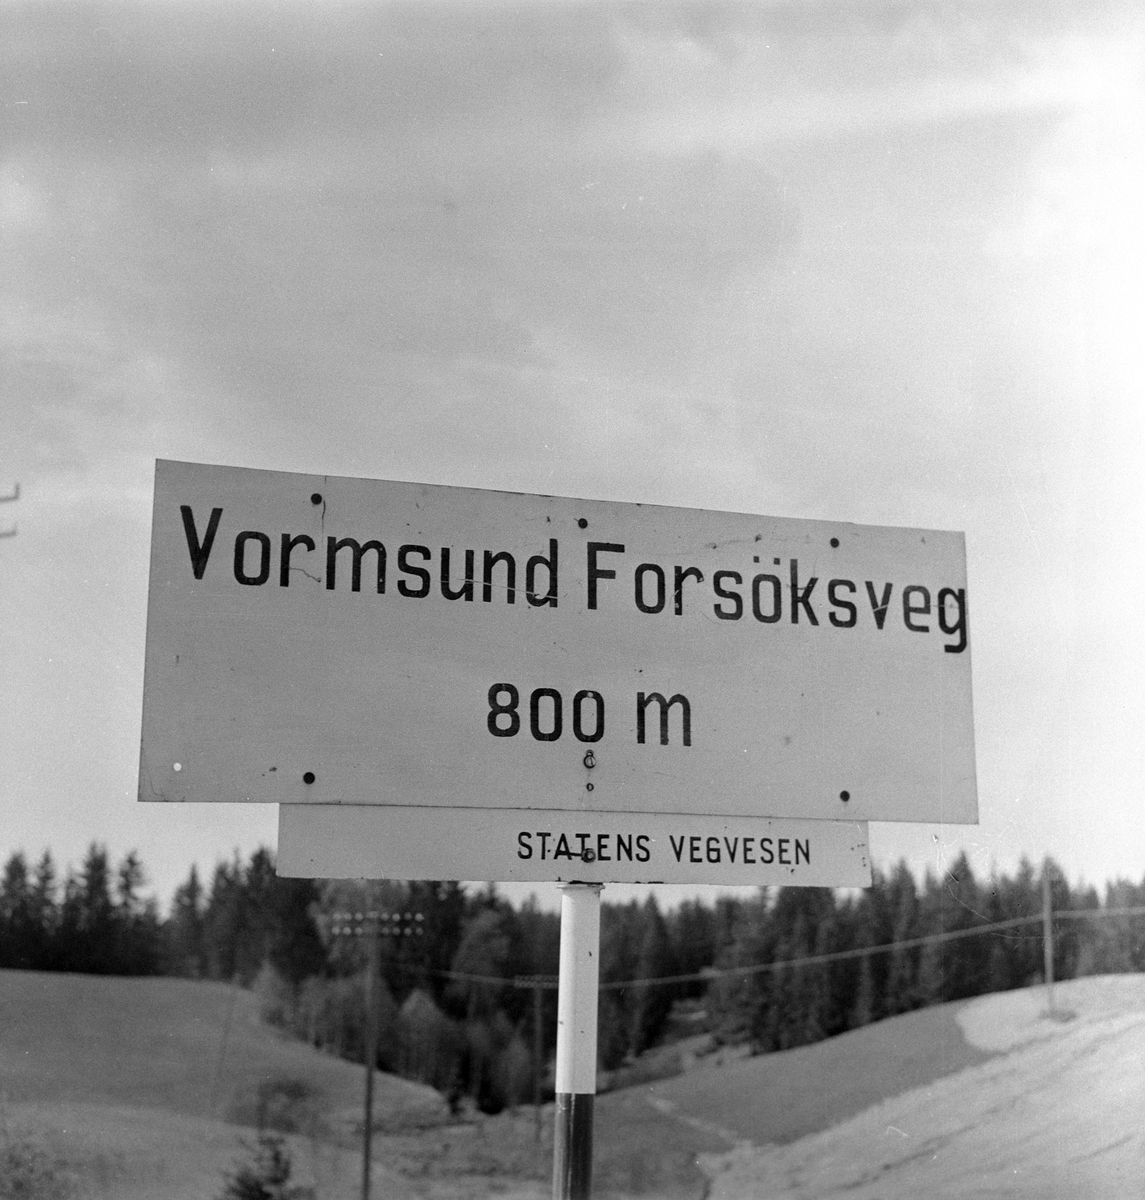 Serie. Landmåling av Riksvei 20, Vormsud Forskningveg. Fotografert 12. mai 1959.